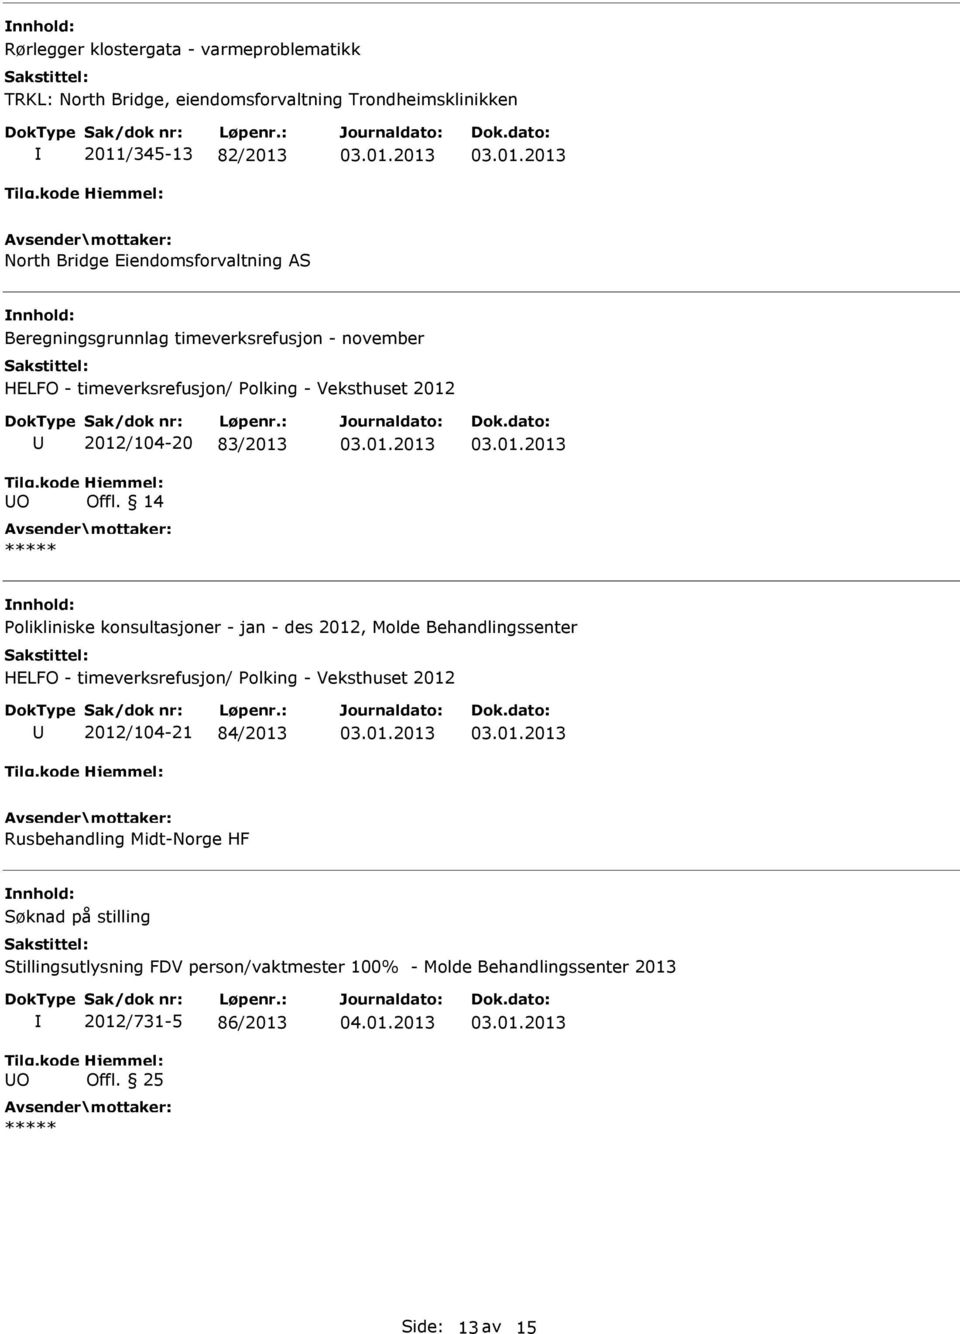 14 Polikliniske konsultasjoner - jan - des 2012, Molde Behandlingssenter HELFO - timeverksrefusjon/ Polking - Veksthuset 2012 2012/104-21 84/2013